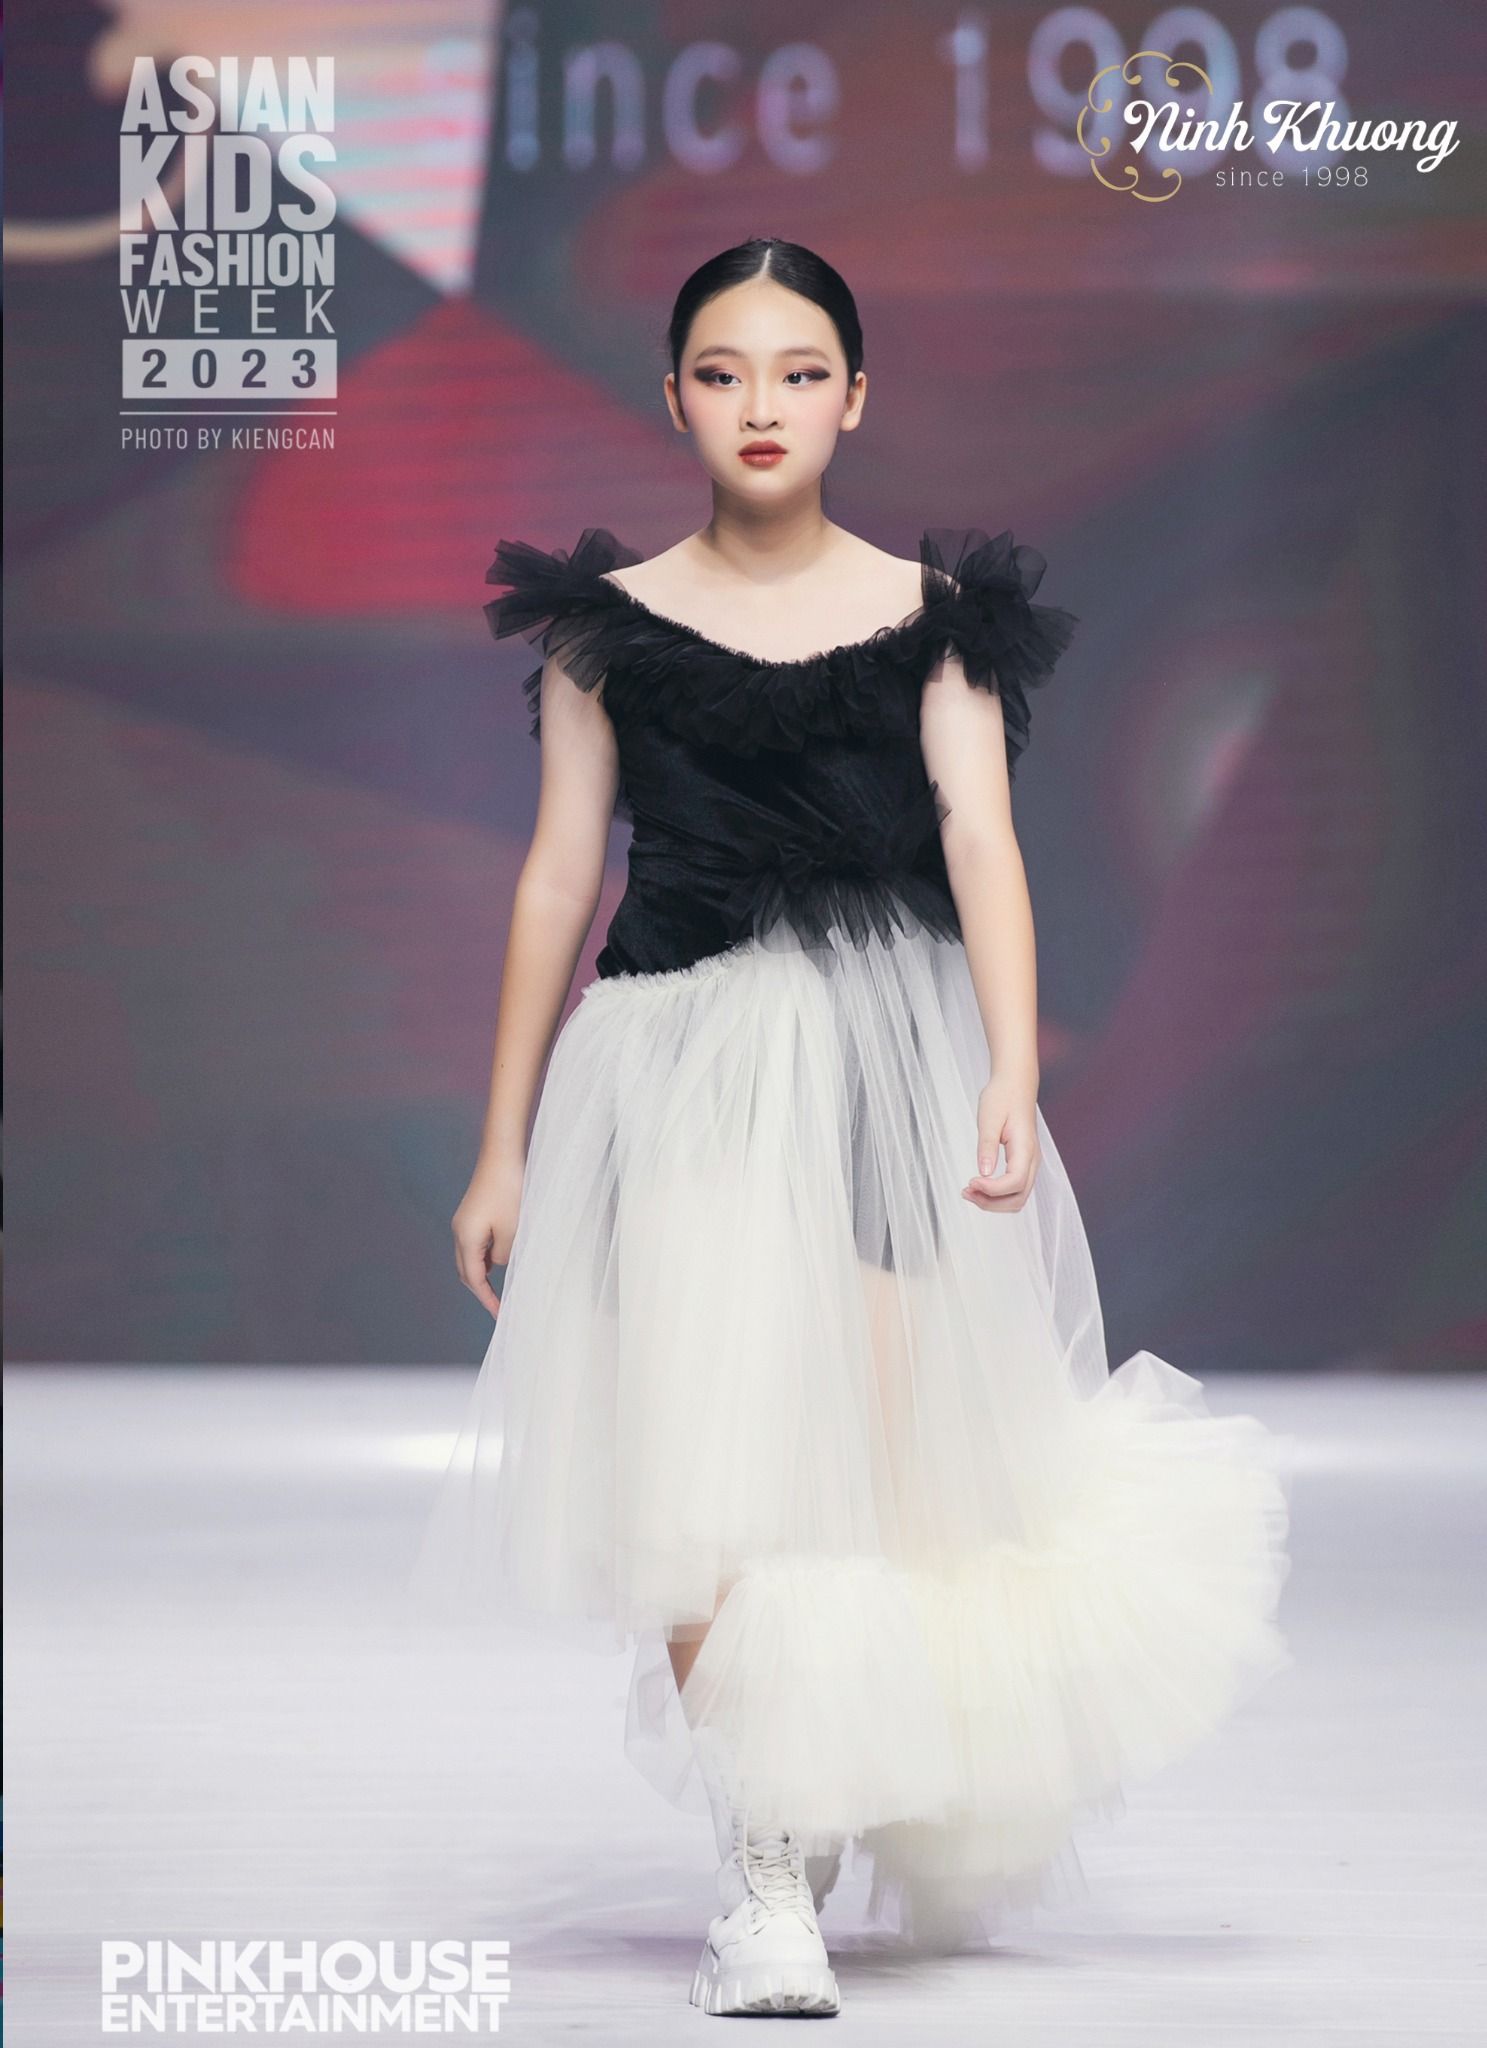  Áo voan + Chân váy xòe | Ninh Khương - AKFW 2023 